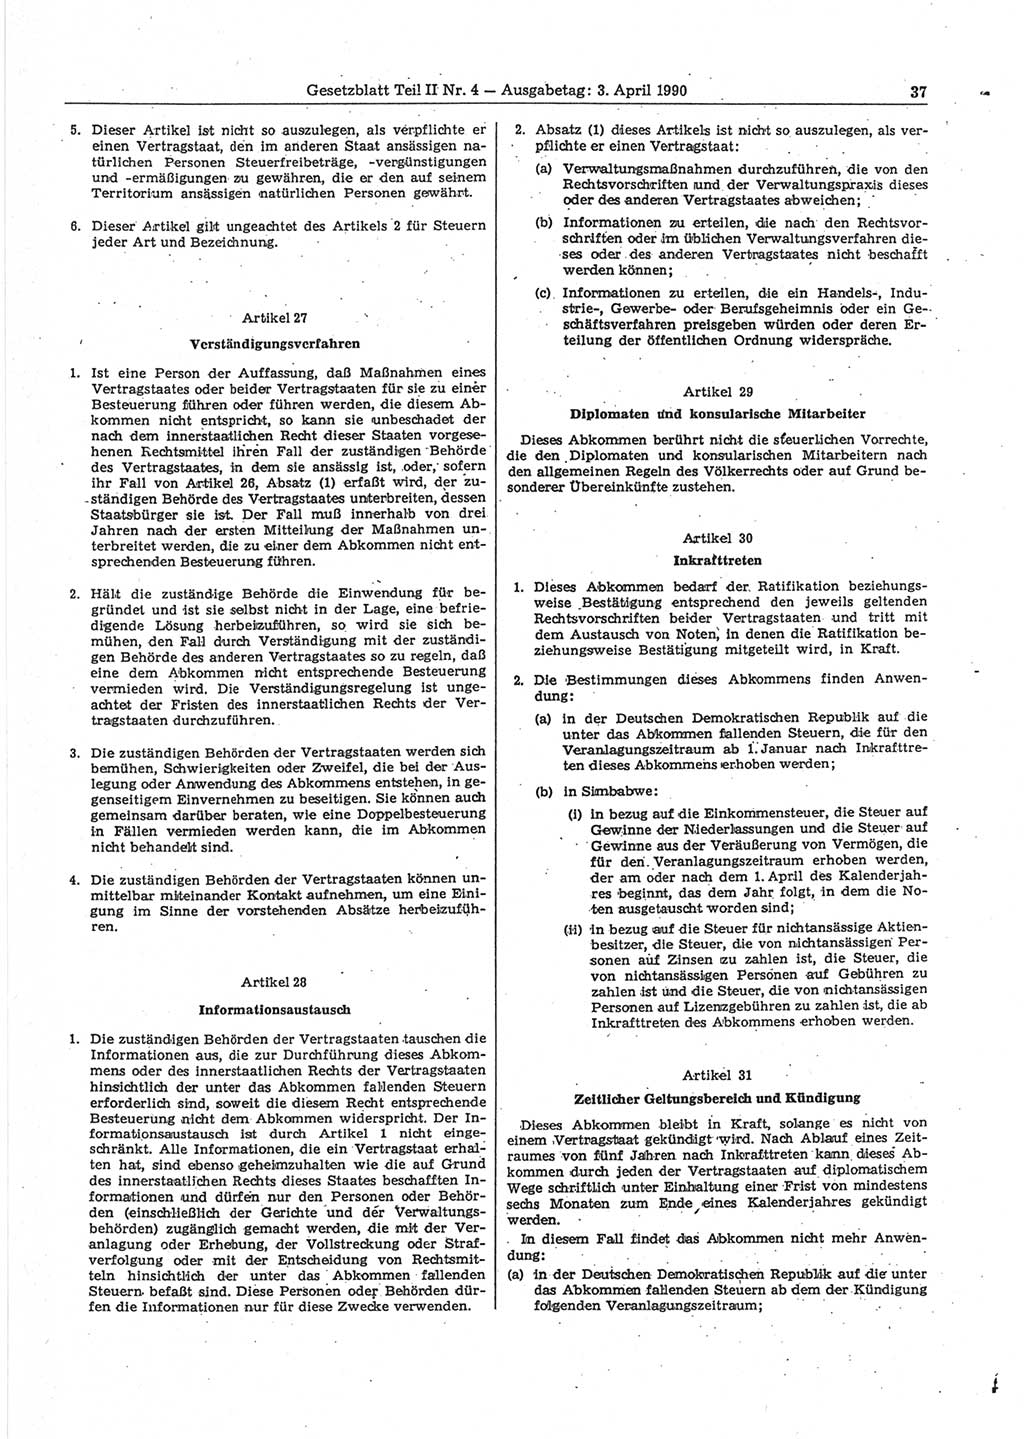 Gesetzblatt (GBl.) der Deutschen Demokratischen Republik (DDR) Teil ⅠⅠ 1990, Seite 37 (GBl. DDR ⅠⅠ 1990, S. 37)